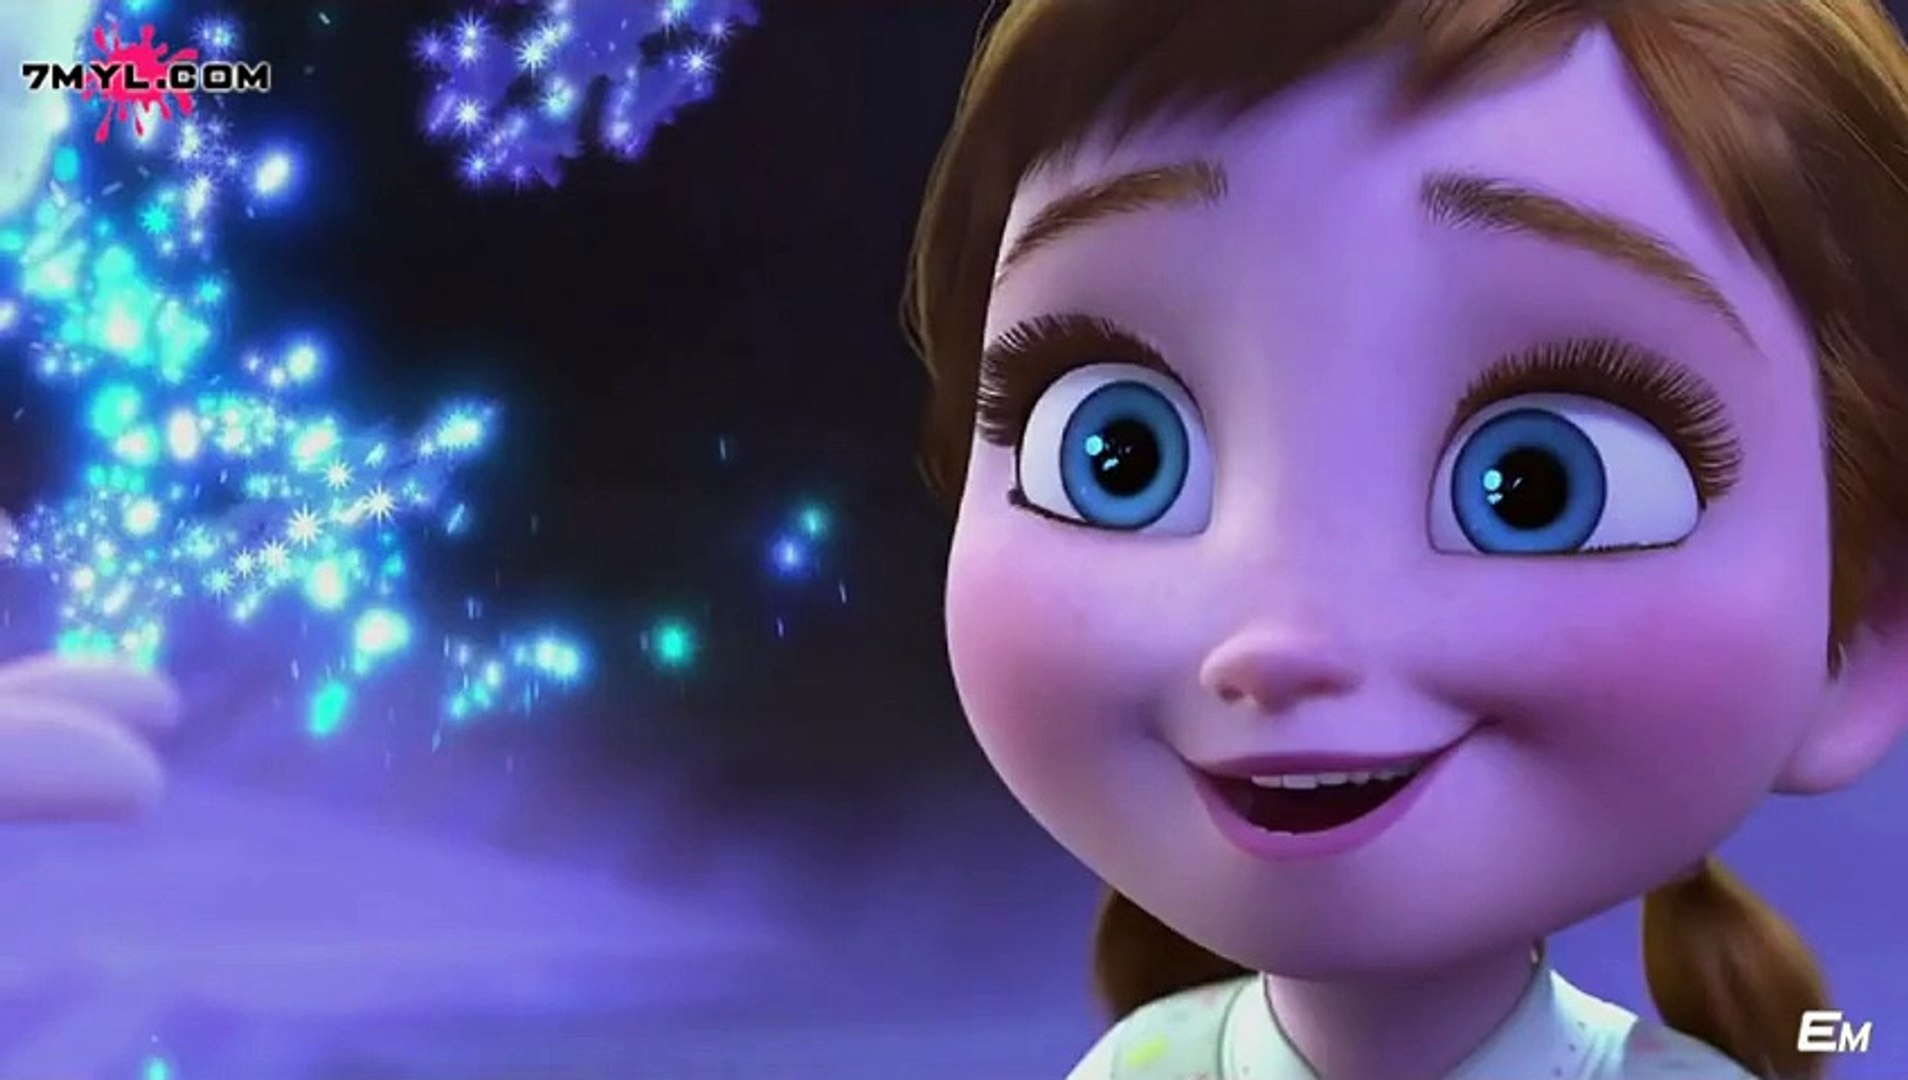 قصة فيلم كرتون ملكة الثلج Frozen مدبلج عربي HD كامل - Dailymotion Video